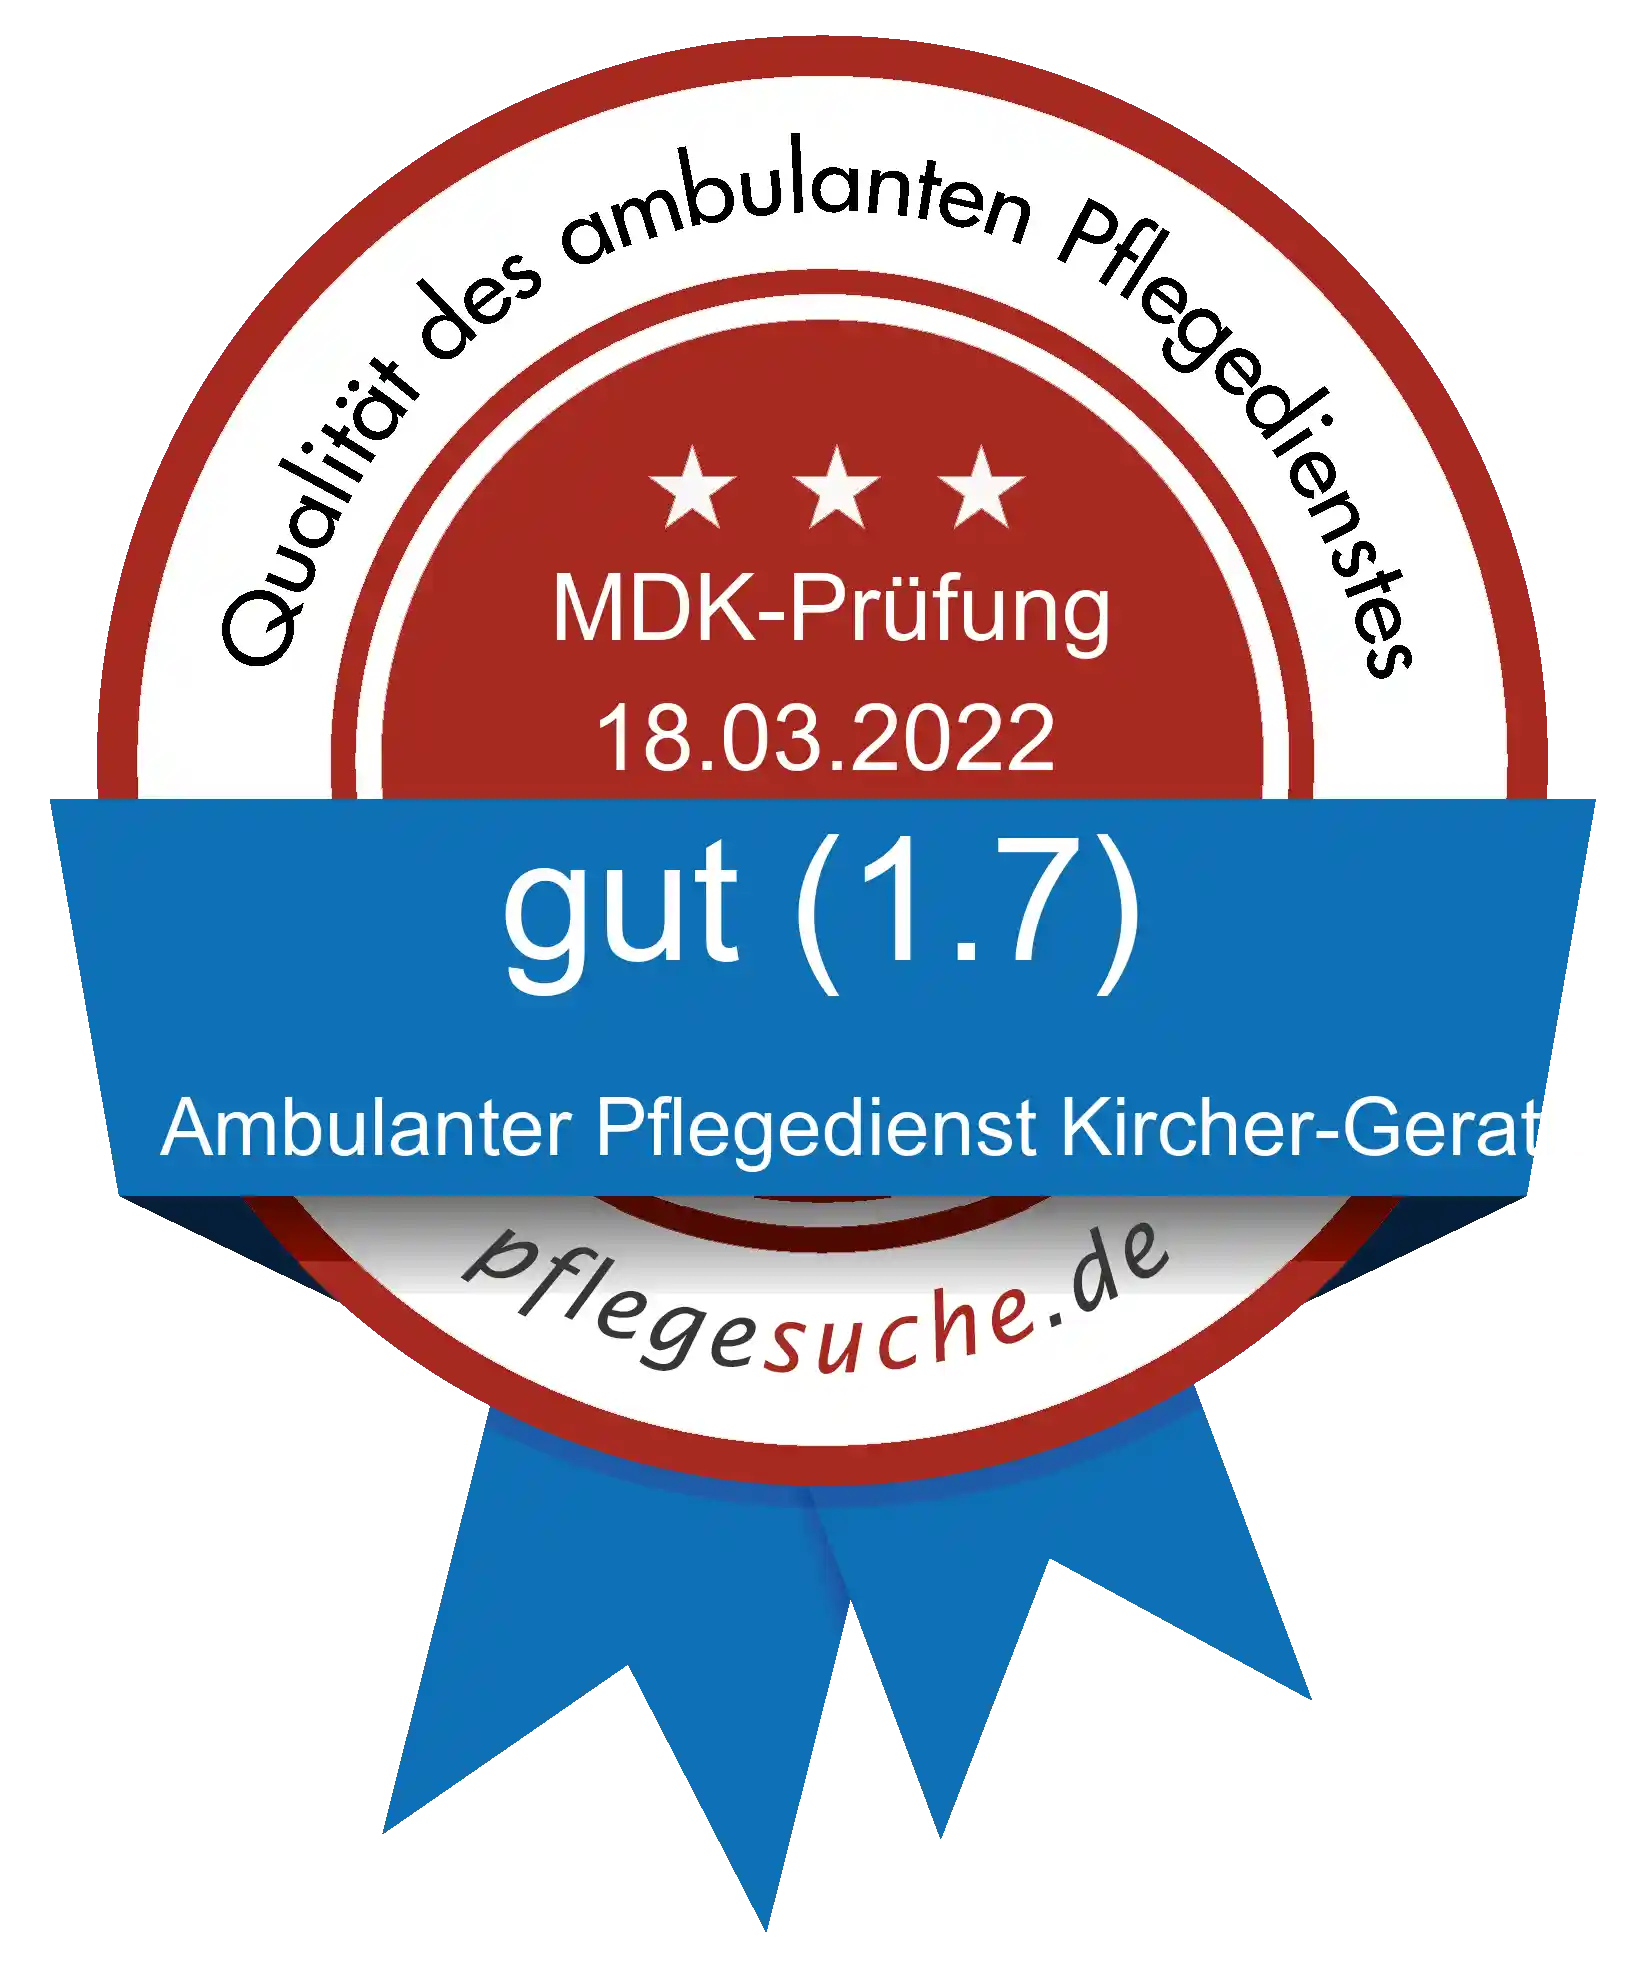 Siegel Benotung: Ambulanter Pflegedienst Kircher-Gerath